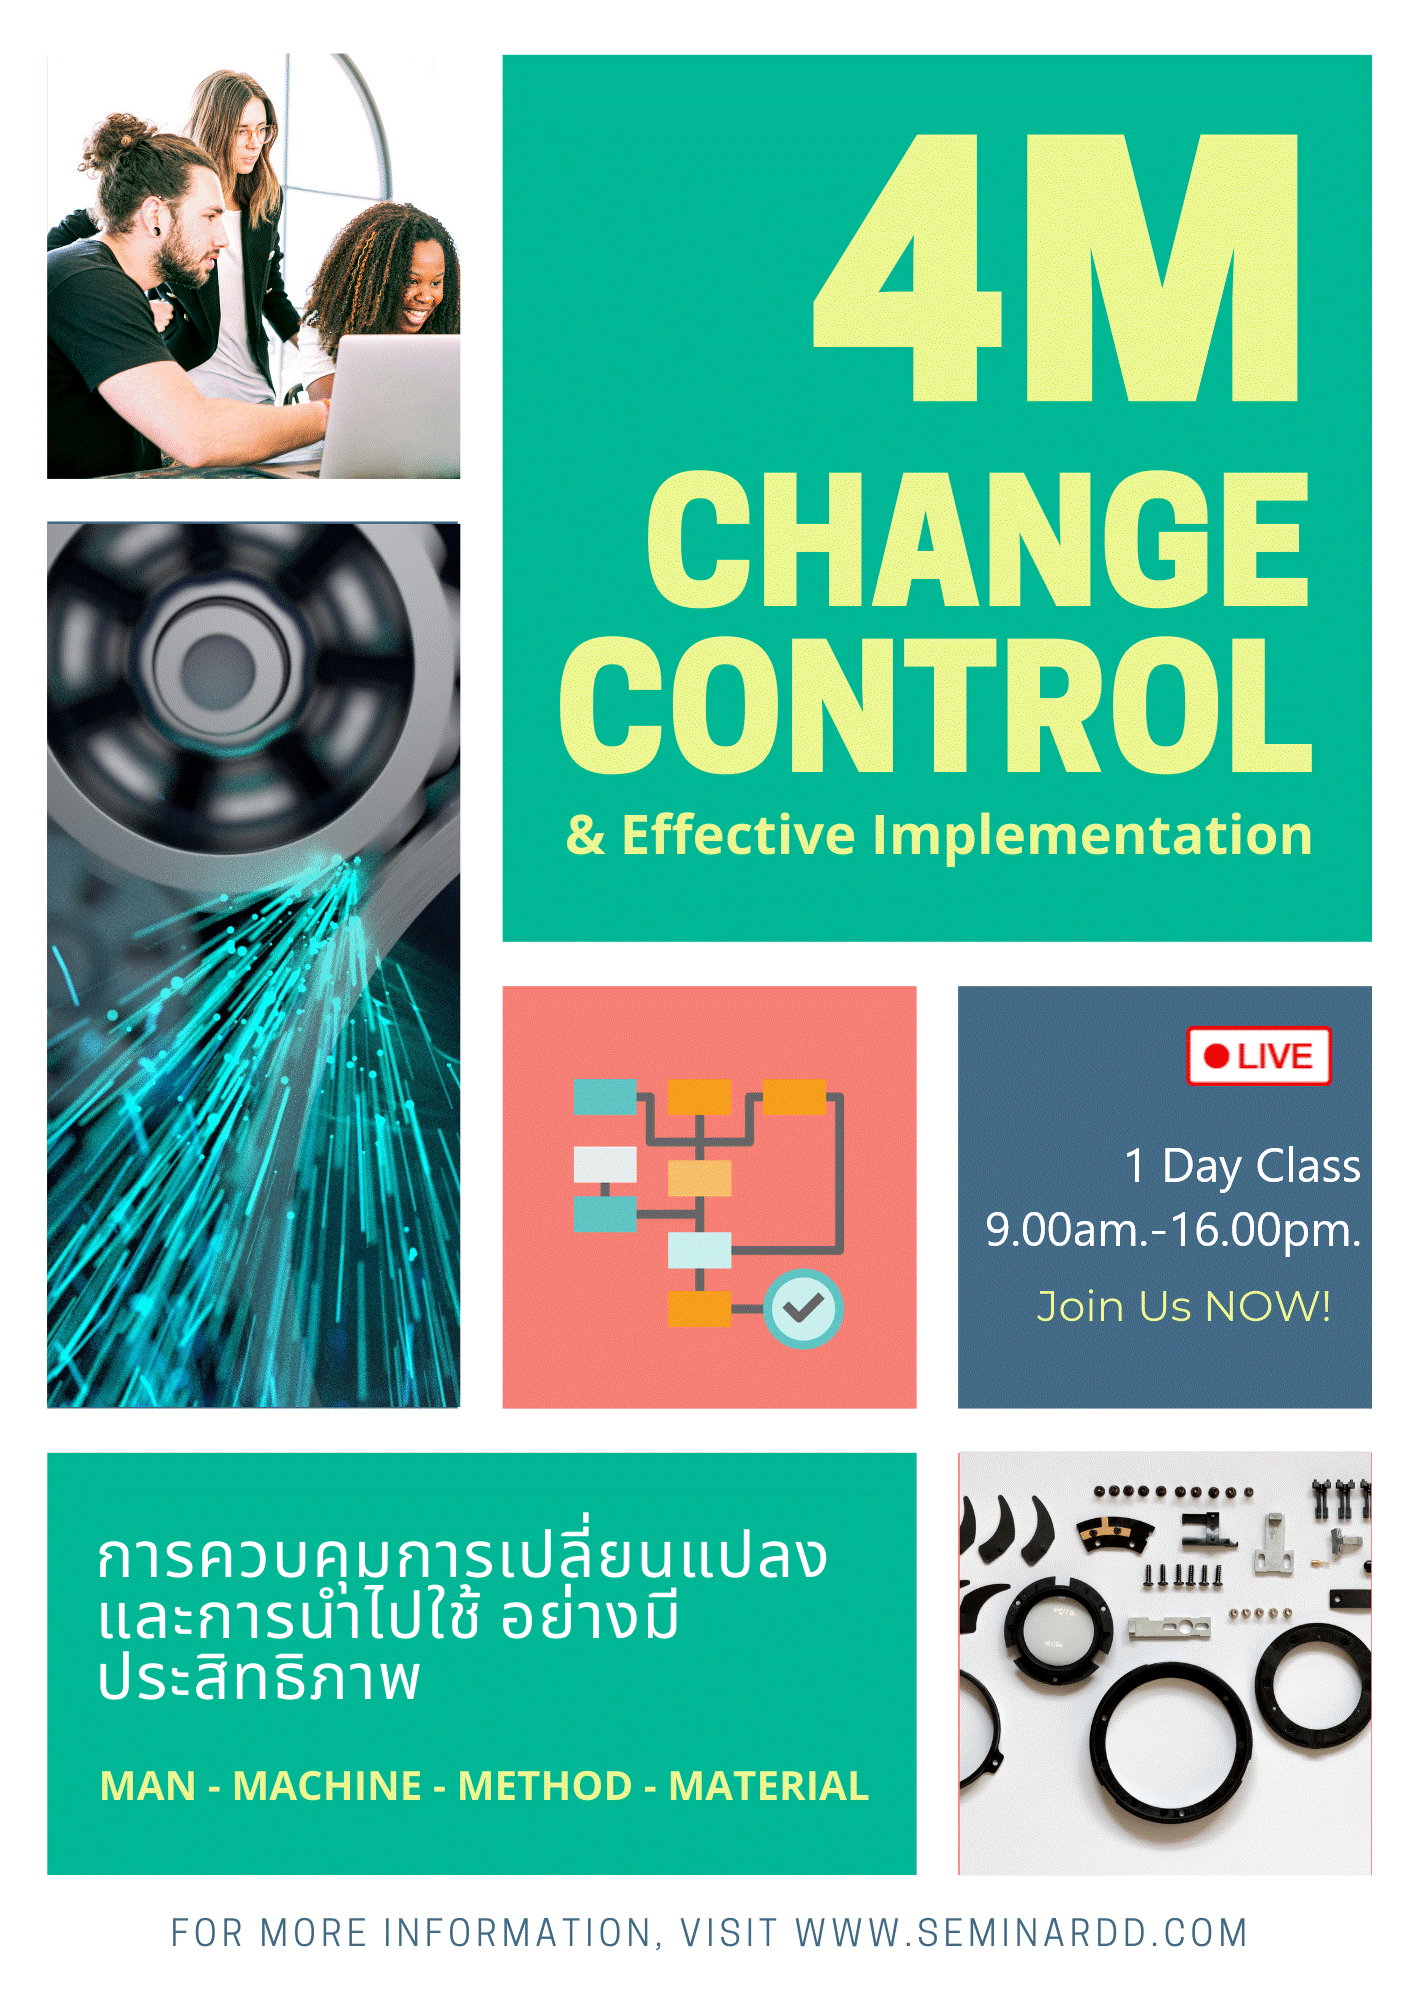 หลักสูตรอบรม การควบคุมการเปลี่ยนแปลง และการนำไปใช้ อย่างมีประสิทธิภาพ (4M Change Control & Effective Implementation) - (หลักสูตรเต็มวัน)